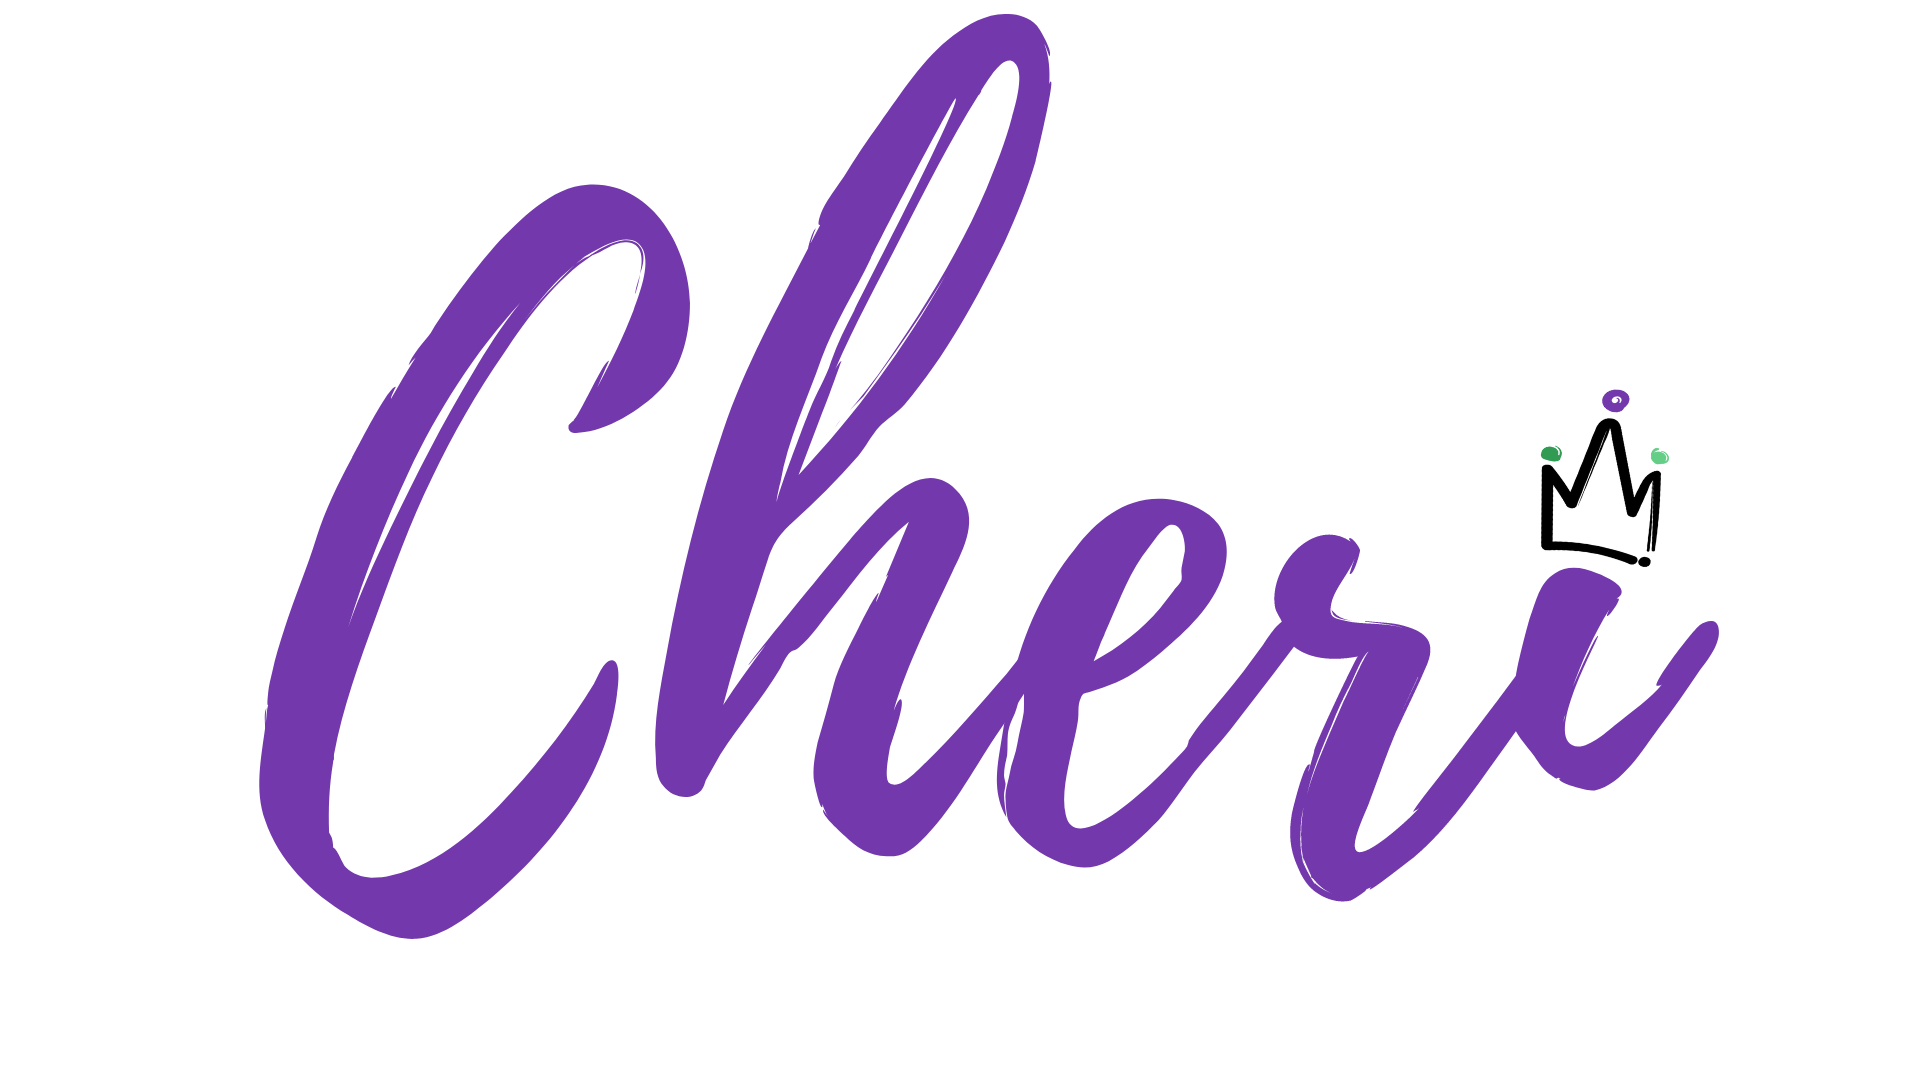 Email Signature Cheri